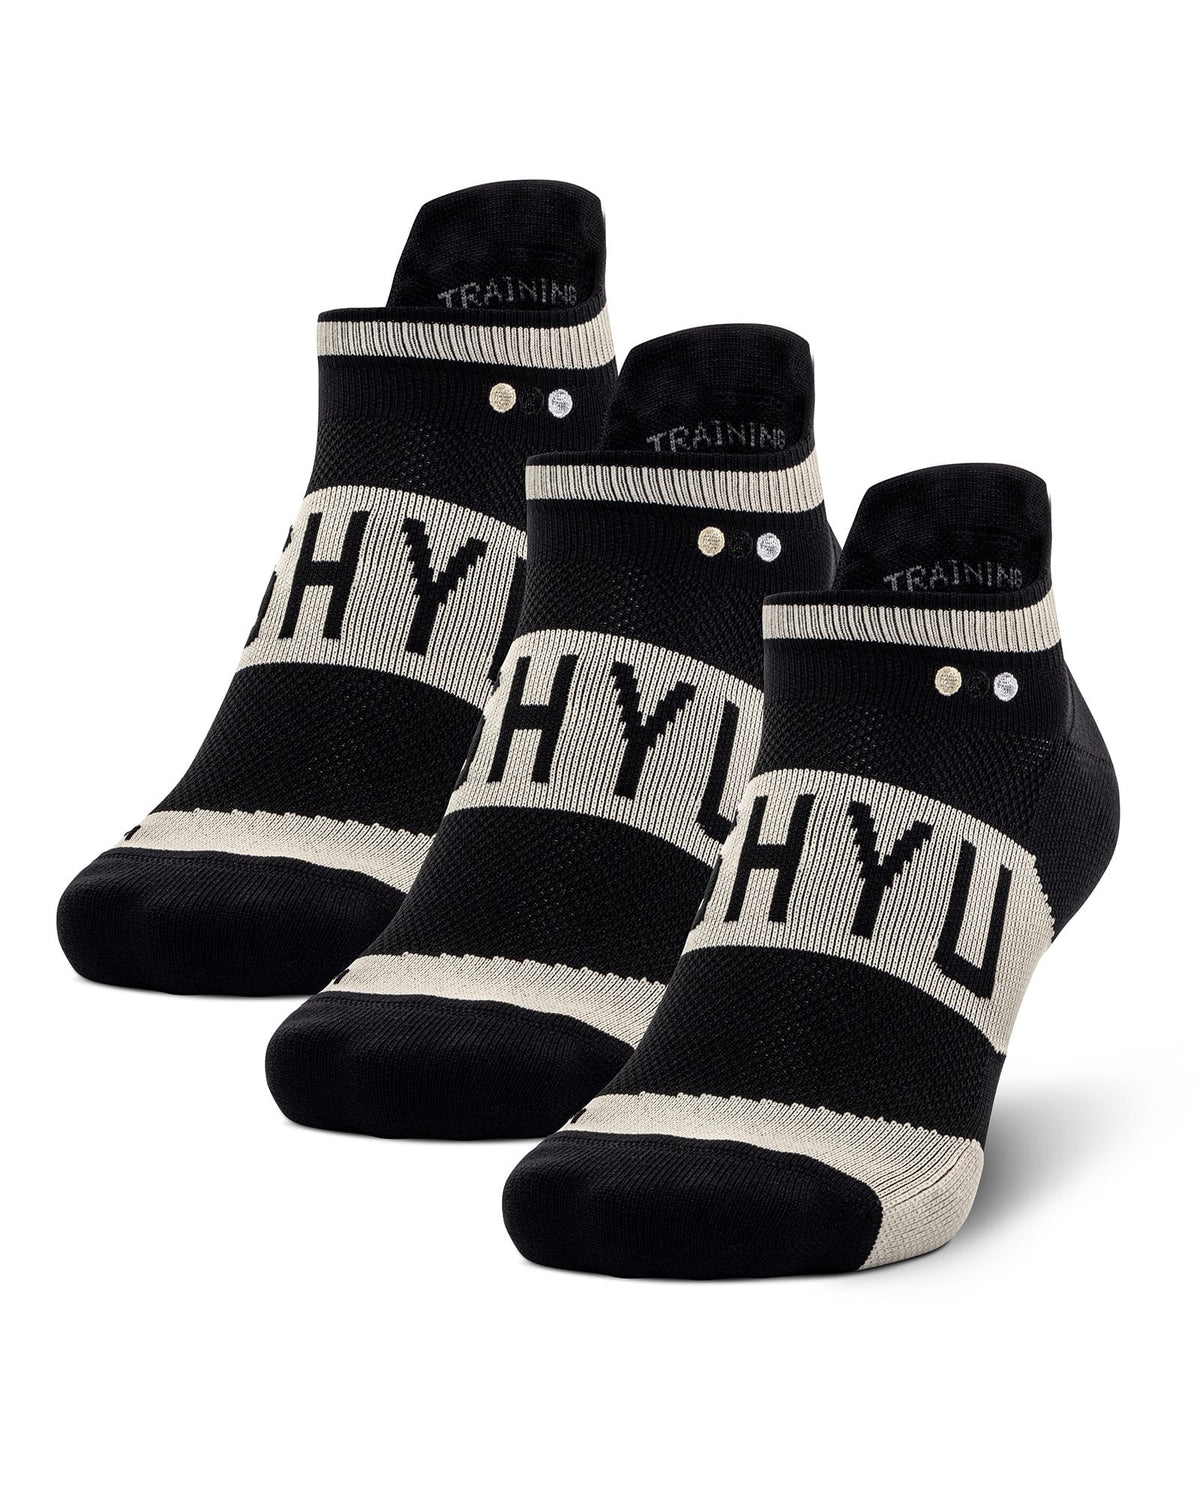 SHYU training socks - 3 pack (no-show tabs)